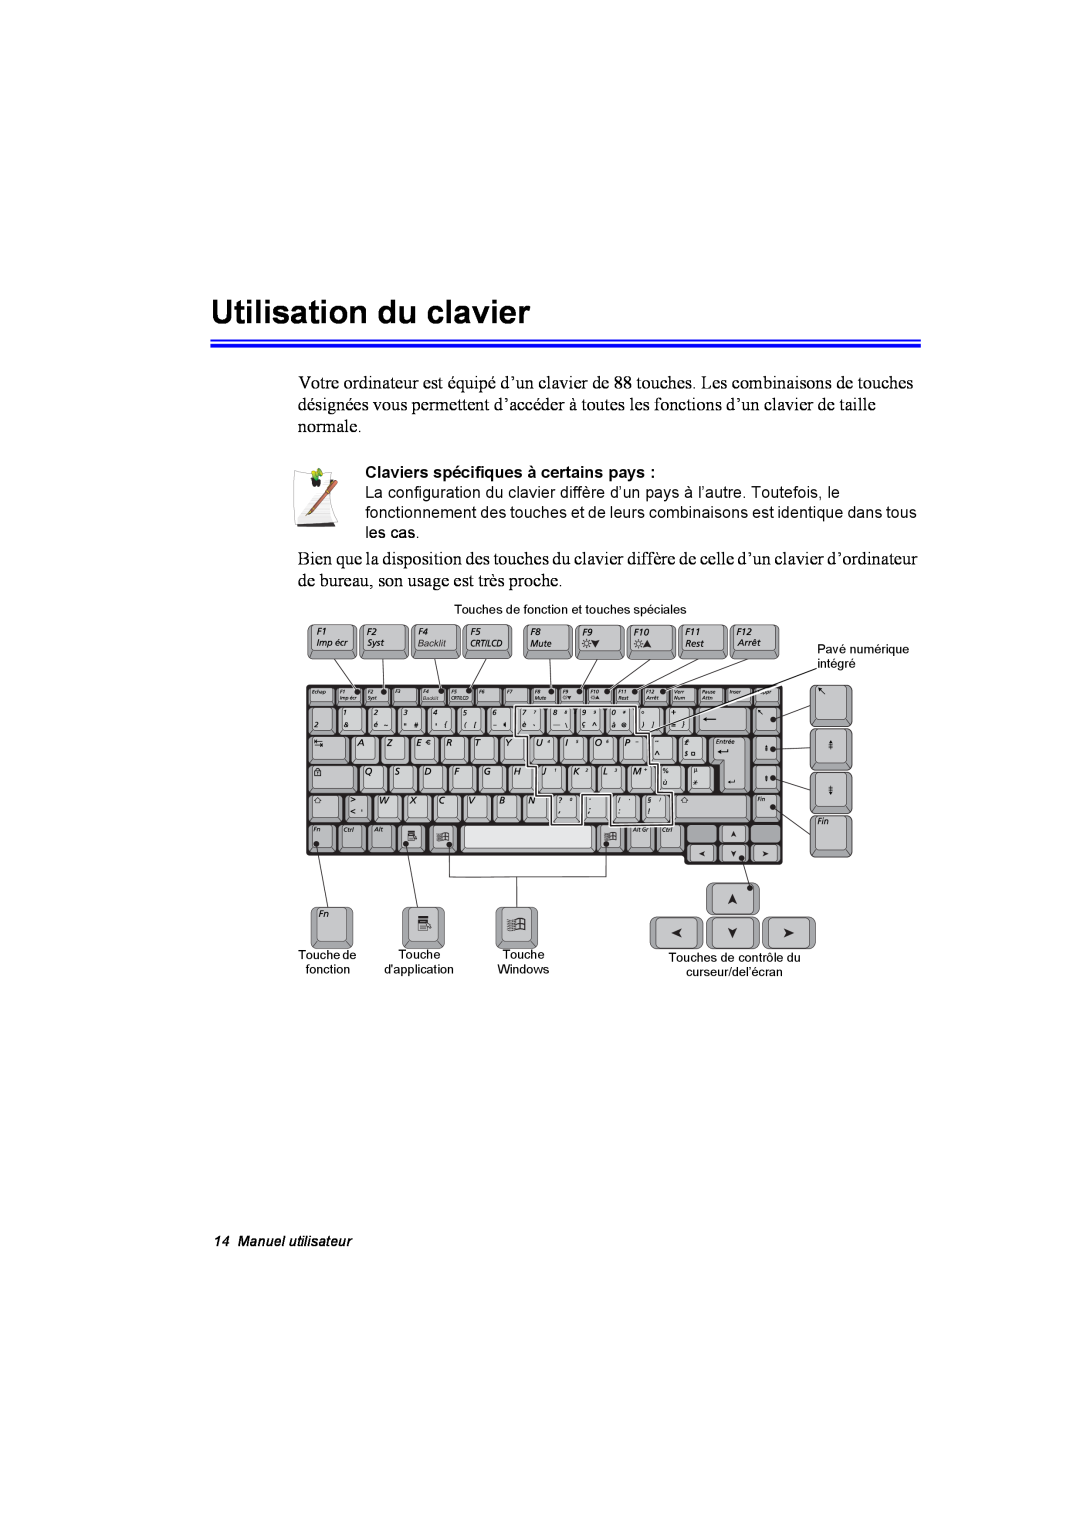 Samsung NA10DH00G5/SUK, NA10AJ0041/SEF, NA10AJ0001/SEF manual Utilisation du clavier, Claviers spécifiques à certains pays 